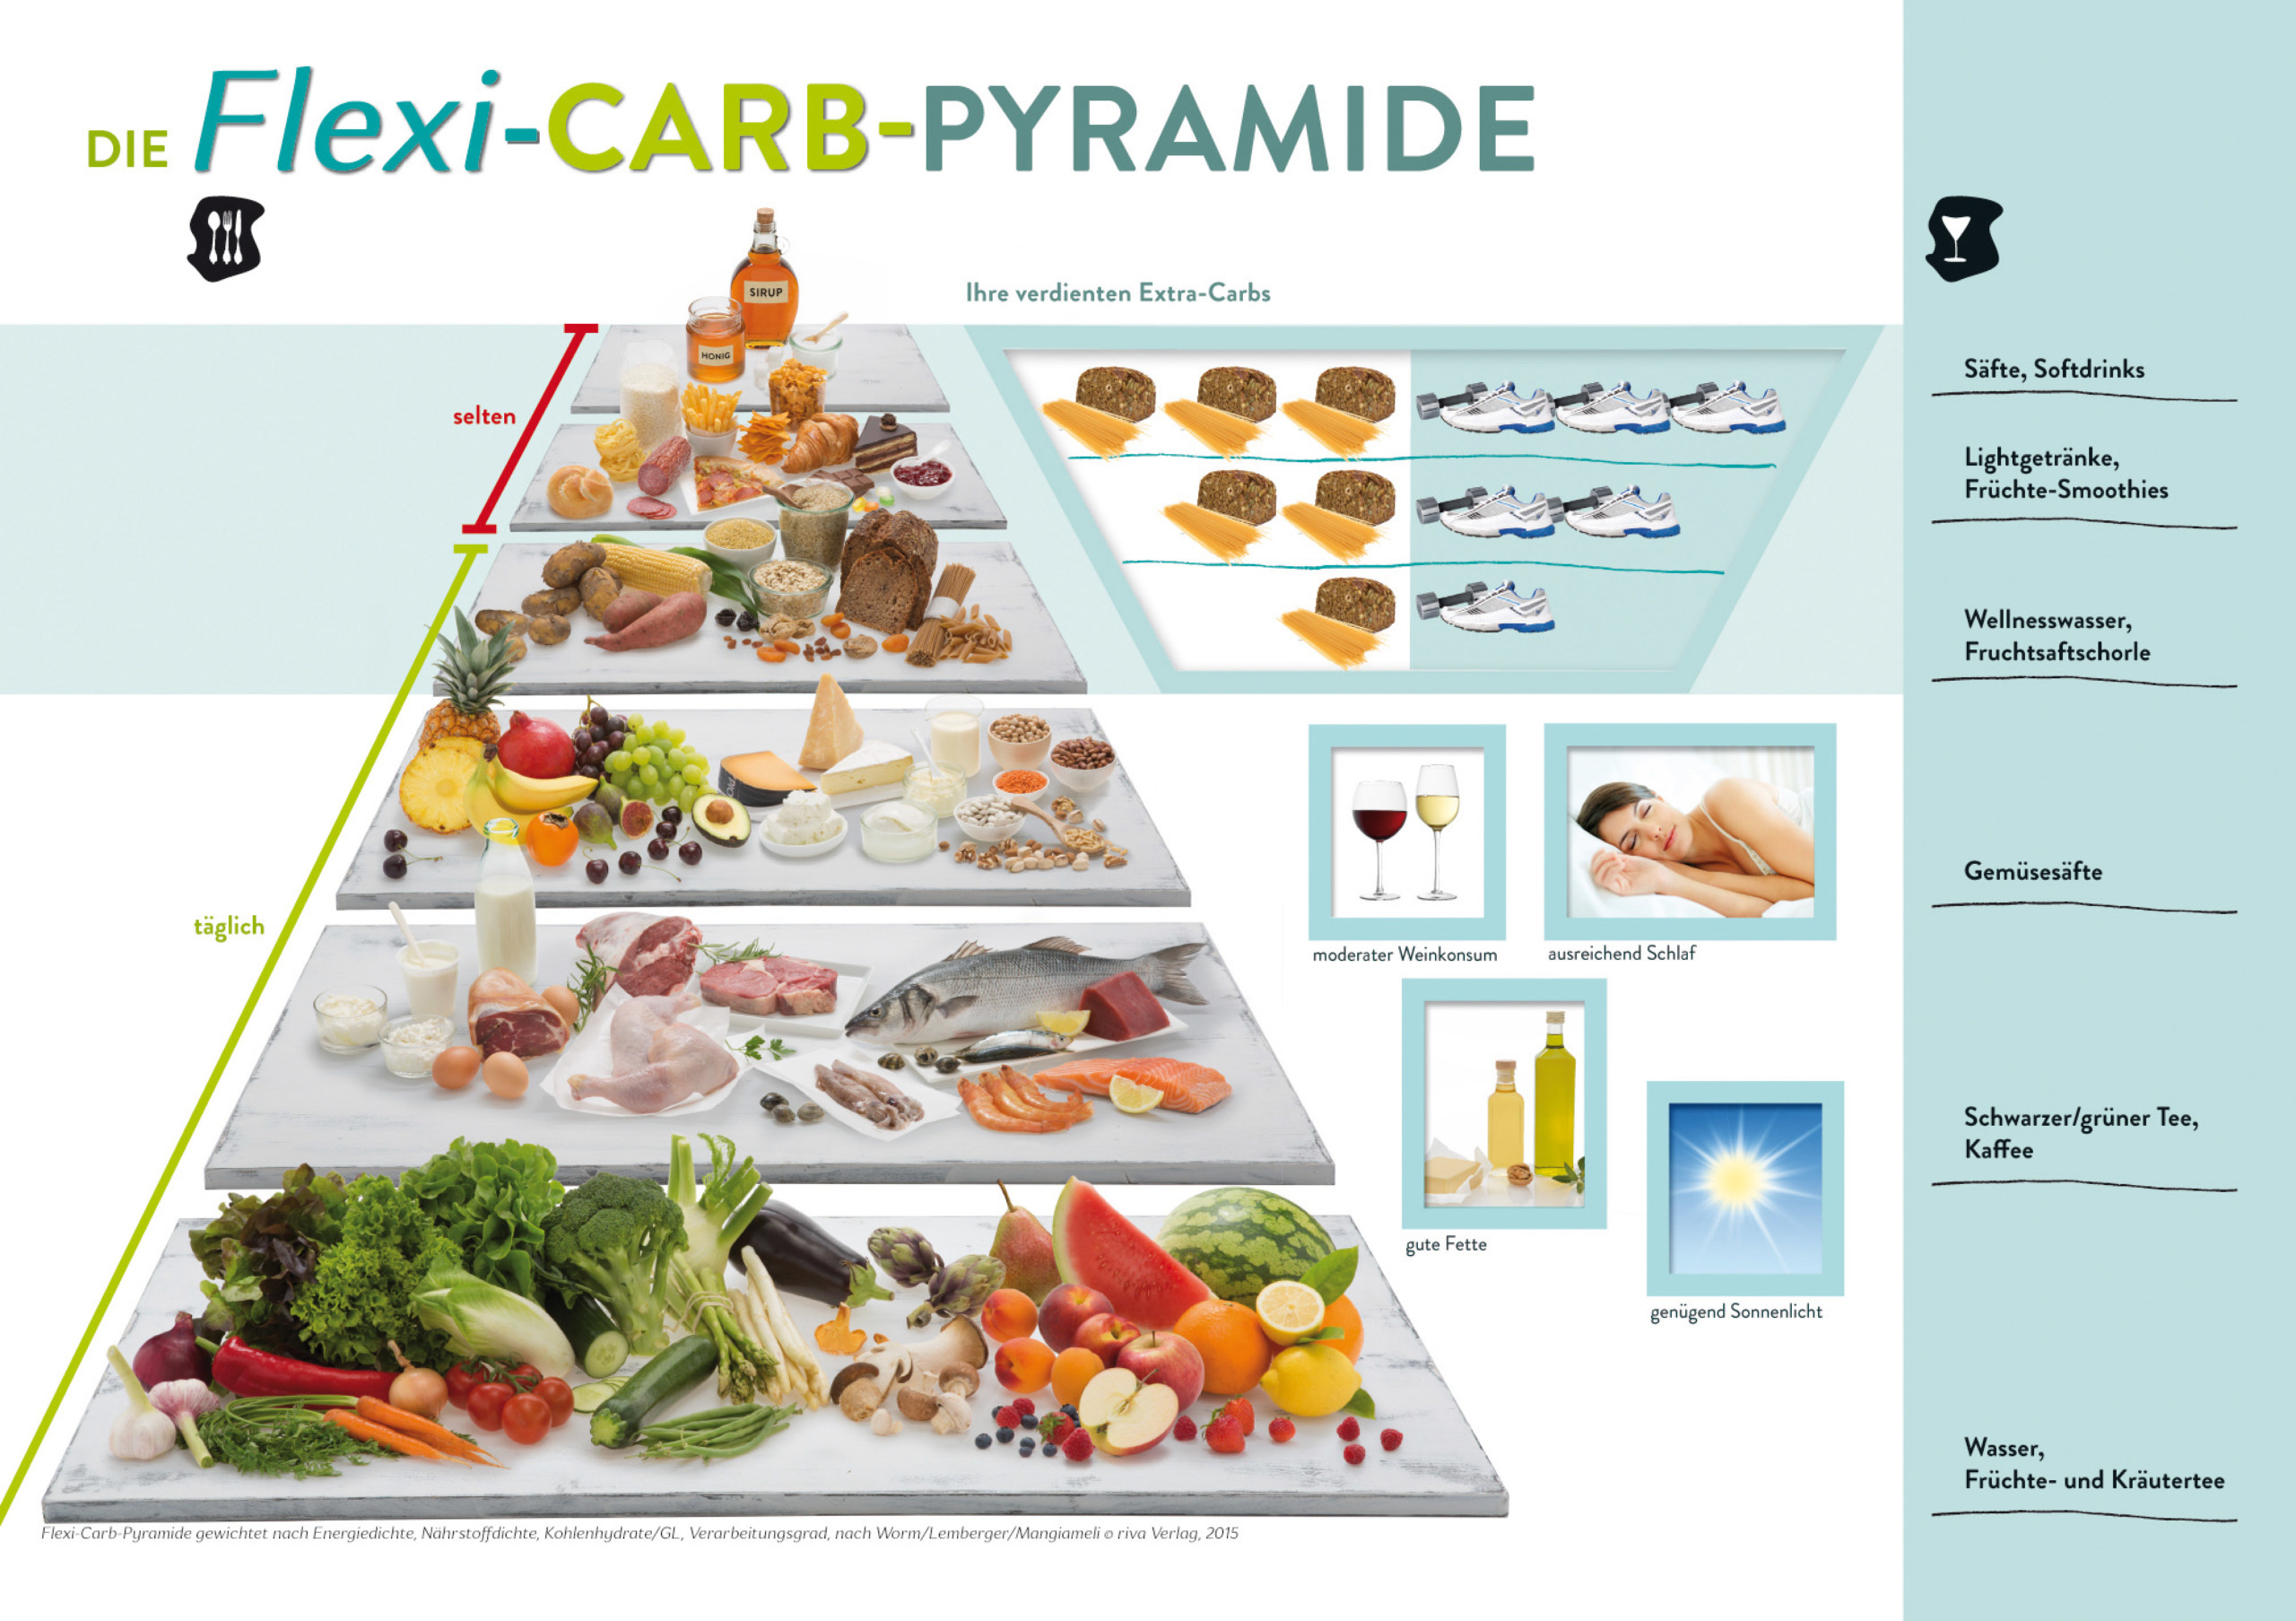 Flexi-Carb-Pyramide-150-dpi-scaled.jpg